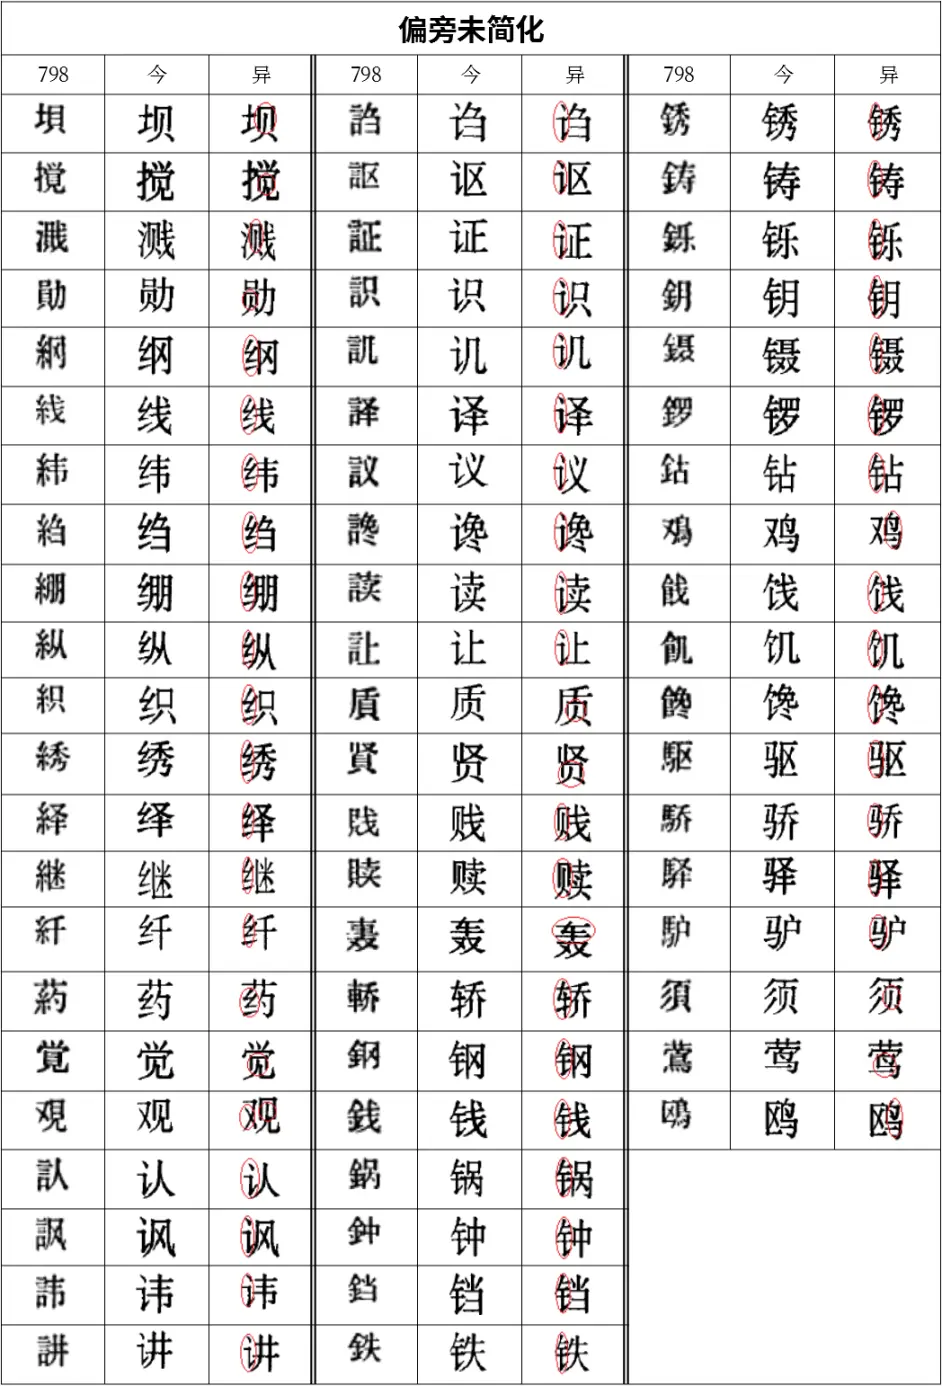 学习笔记 汉字简化方案草案 简化字部分浅探 哔哩哔哩